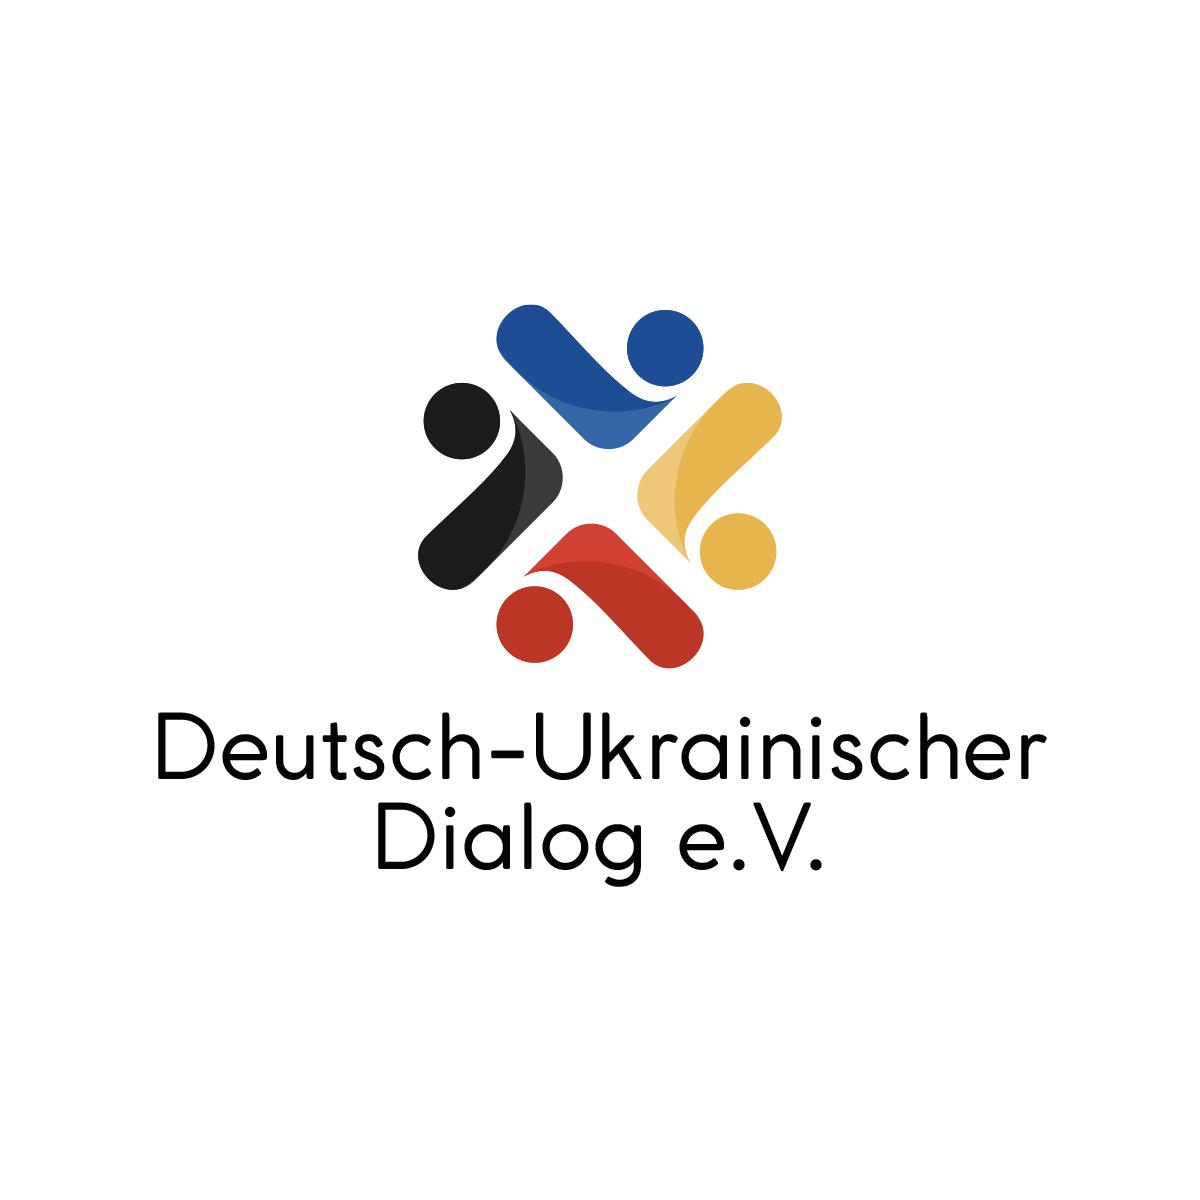 Deutsch-ukrainischer Dialog